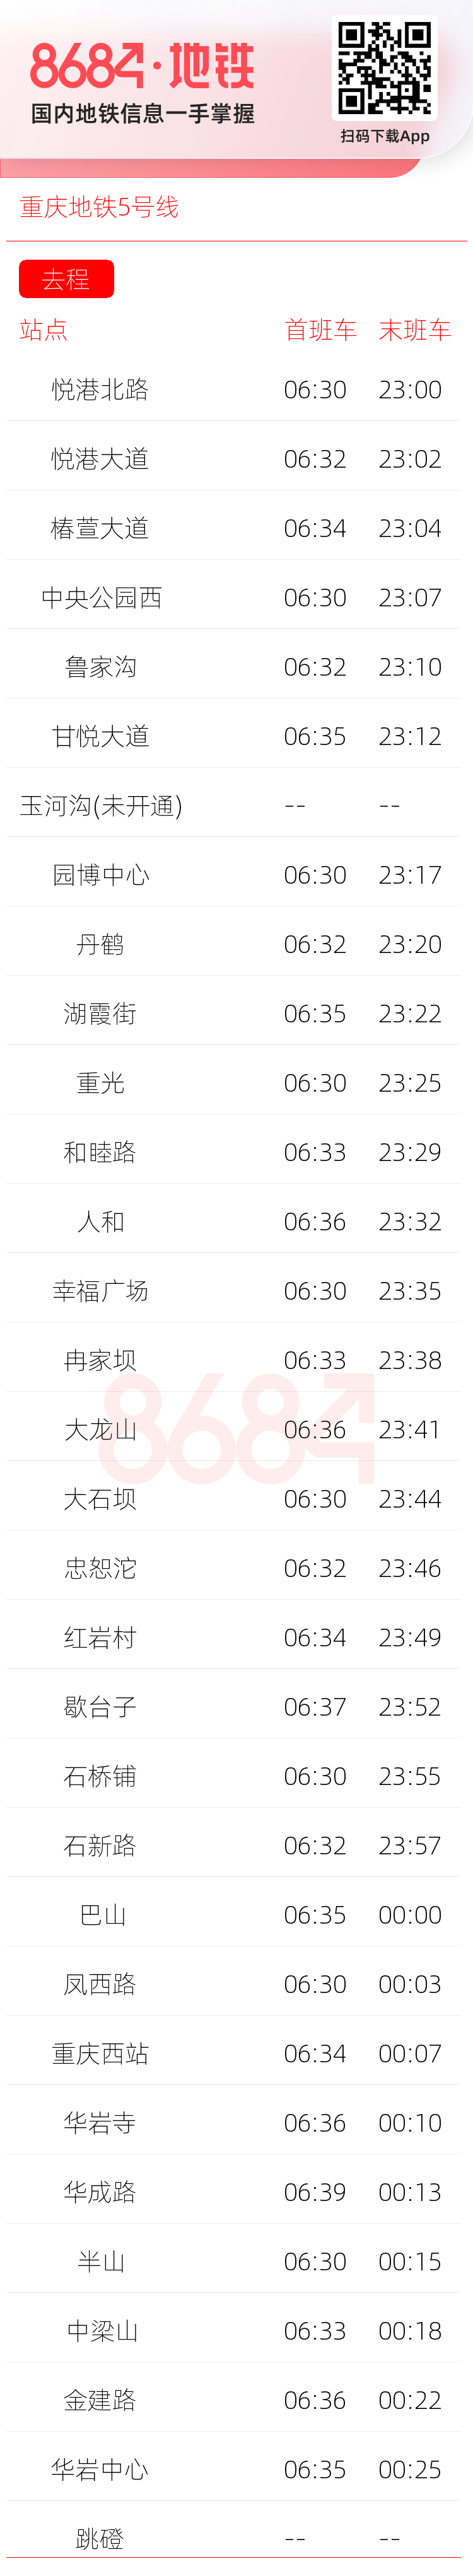 重庆地铁5号线运营时间表